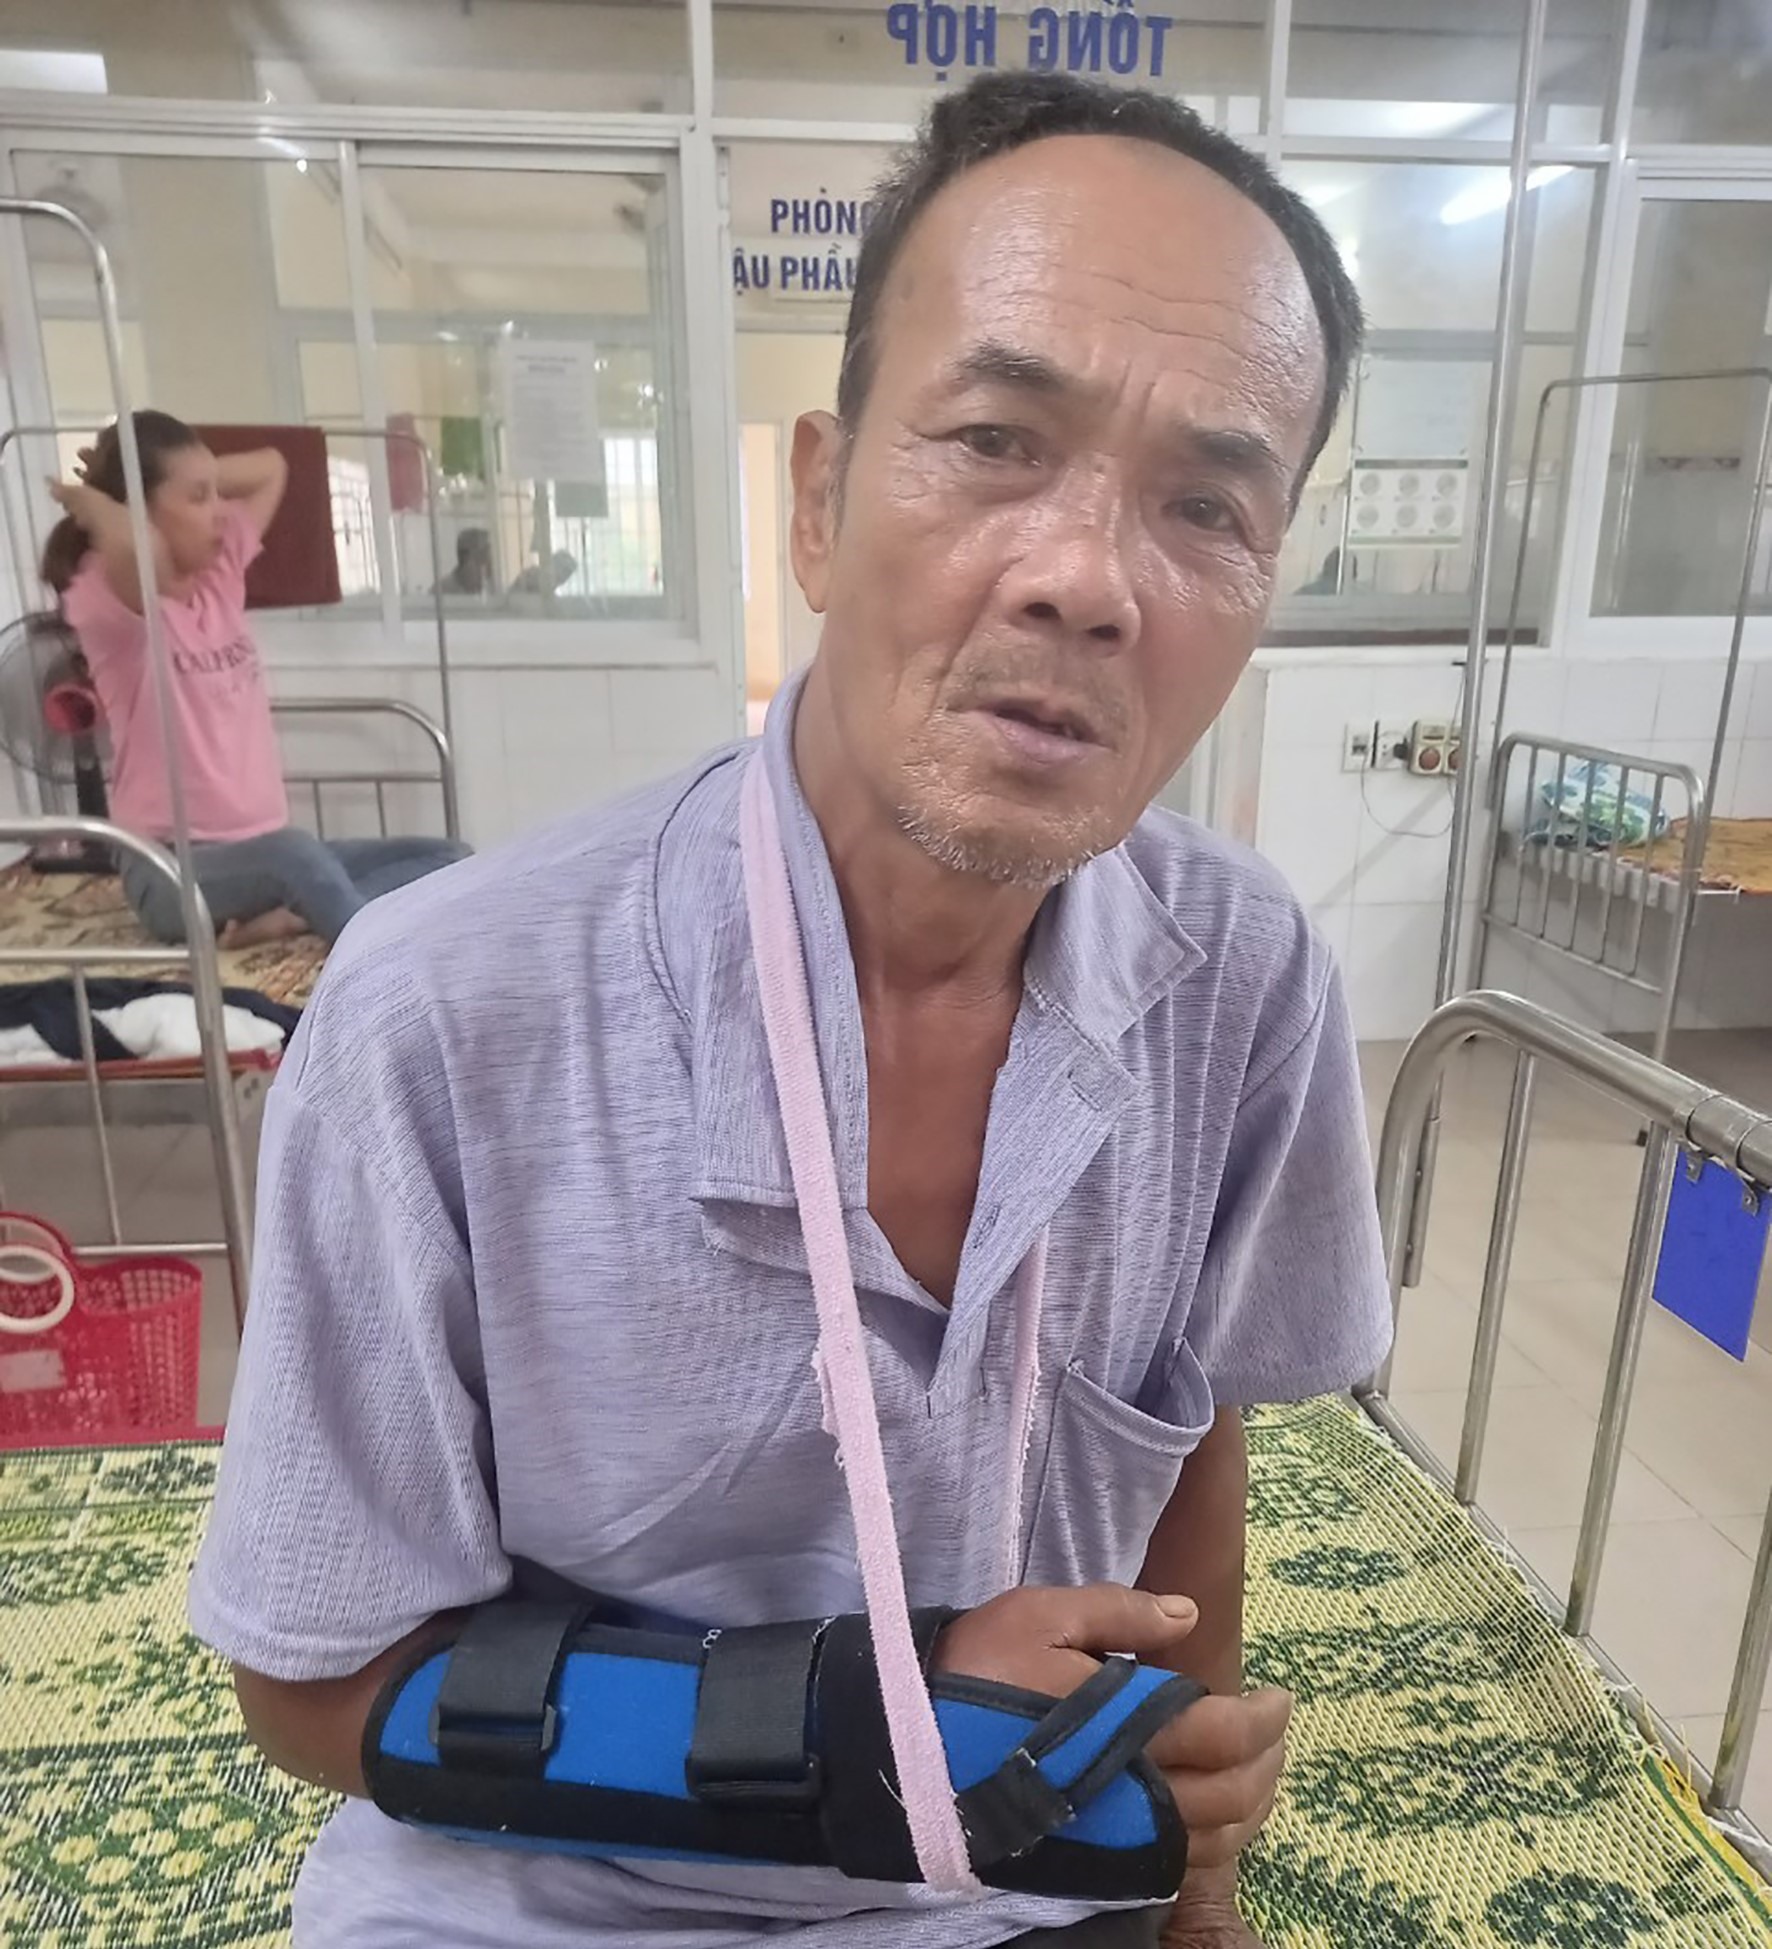 Ông Hồ Xuân Thành bị khỉ cắn, đang điều trị tại Bệnh viện Đa khoa khu vực Triệu Hải- Ảnh: Hoàng Táo